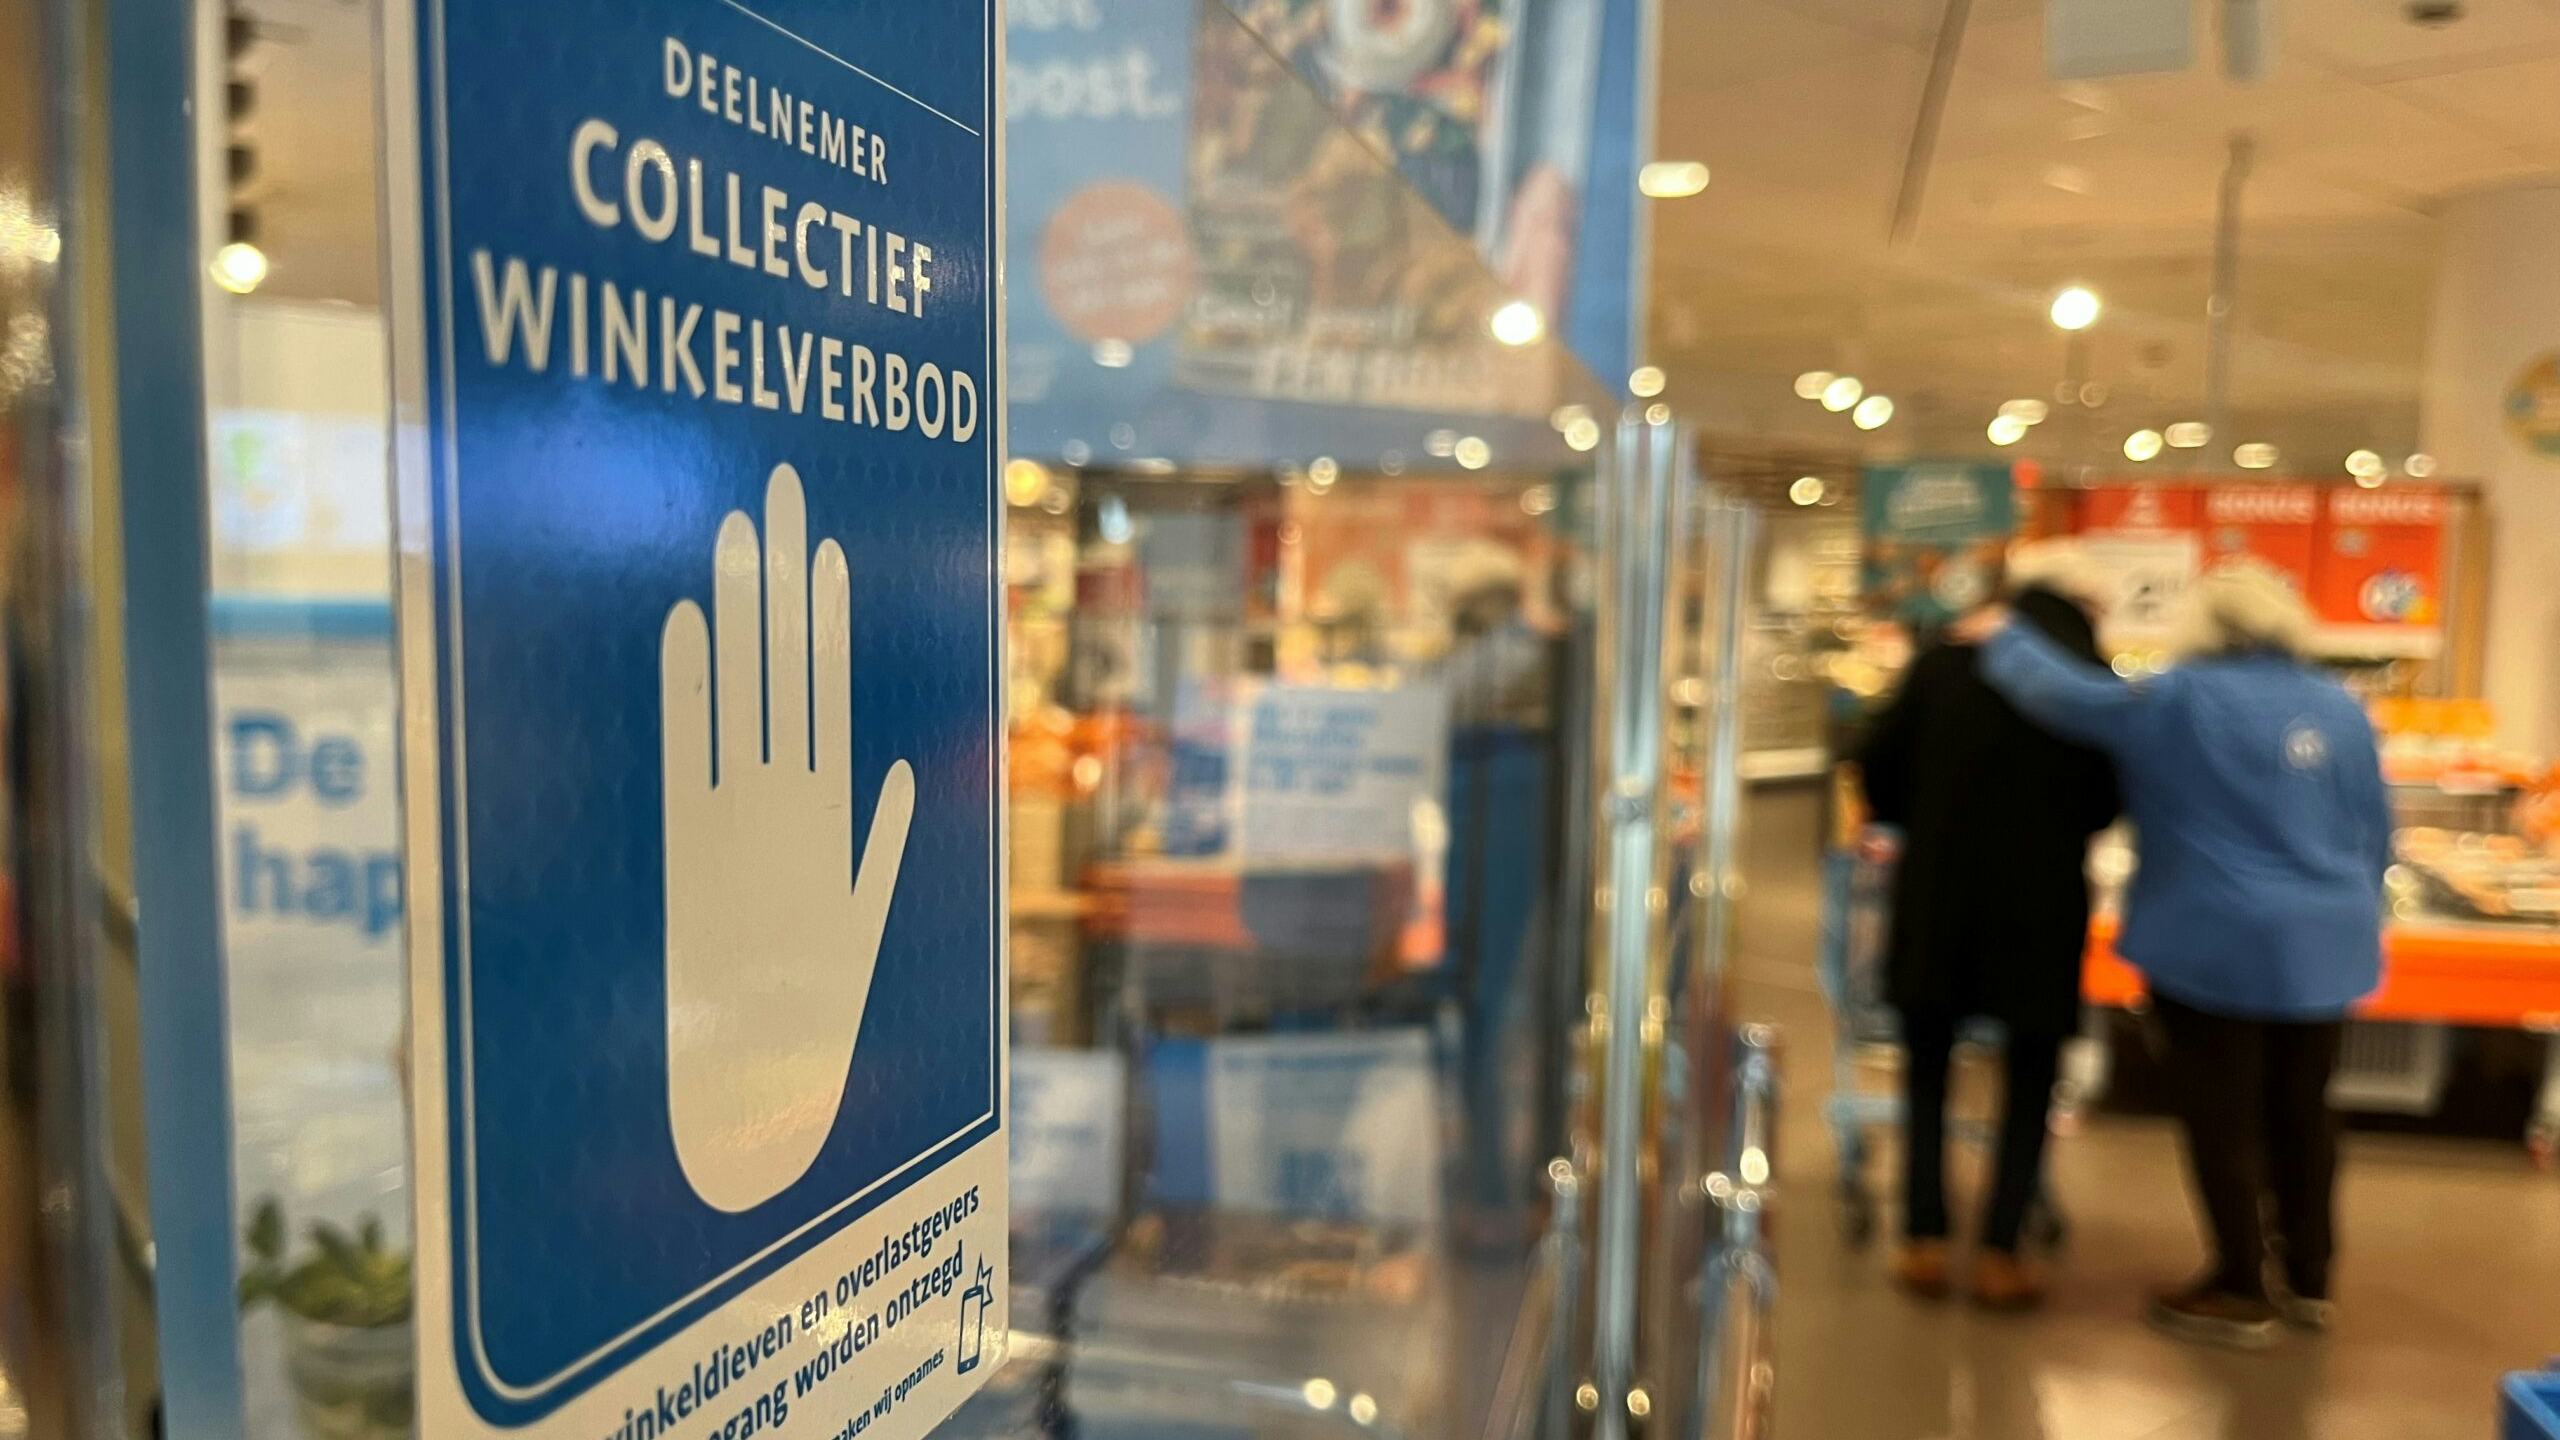 Albert Heijn in het Utrechtse winkelcentrum Hoog Catharijne strijdt met een collectief winkelverbod tegen de vele winkeldieven. Foto: Distrifood